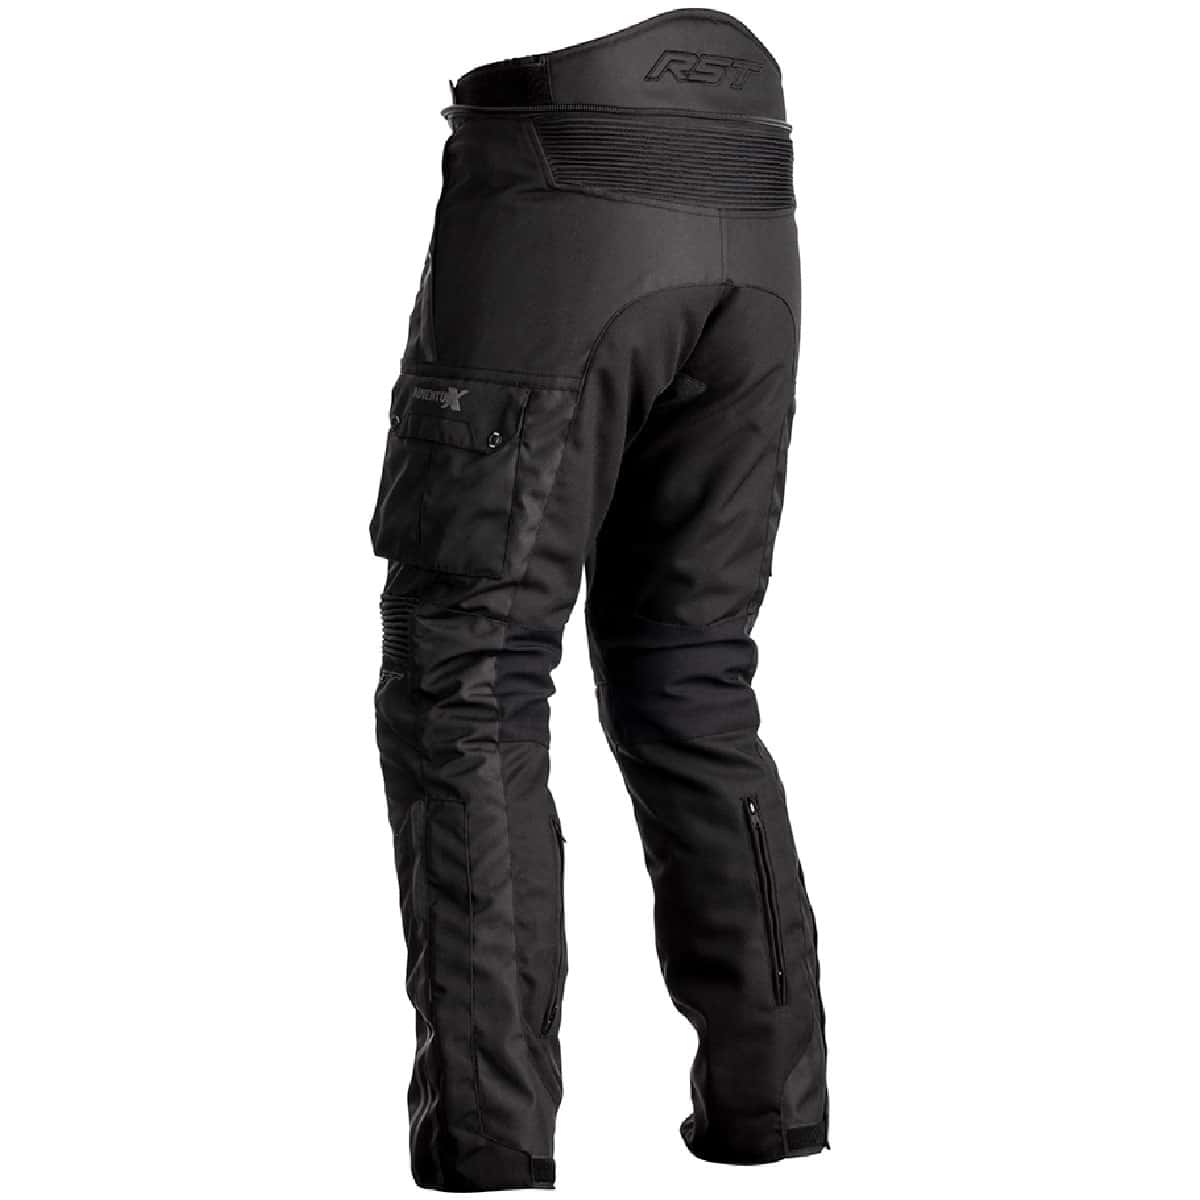 RST Pro Series Adventure-X Textile Trousers short